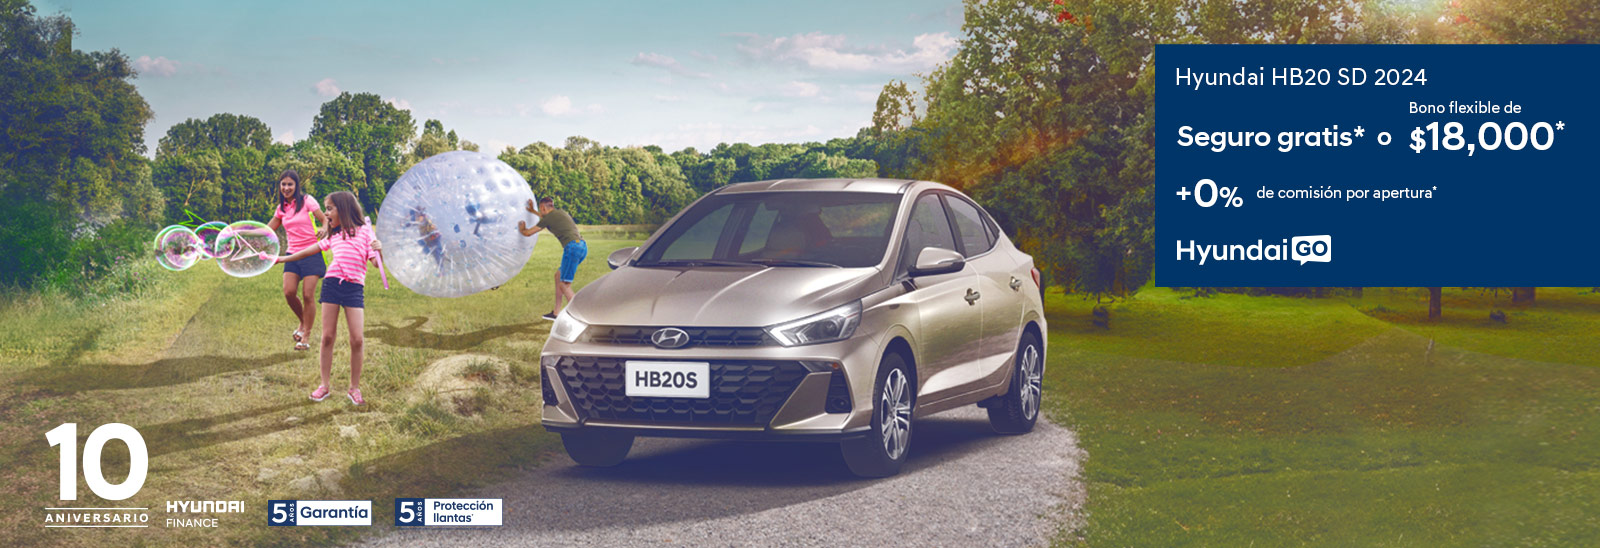 Promoción HB20 SD mayo con Hyundai Go